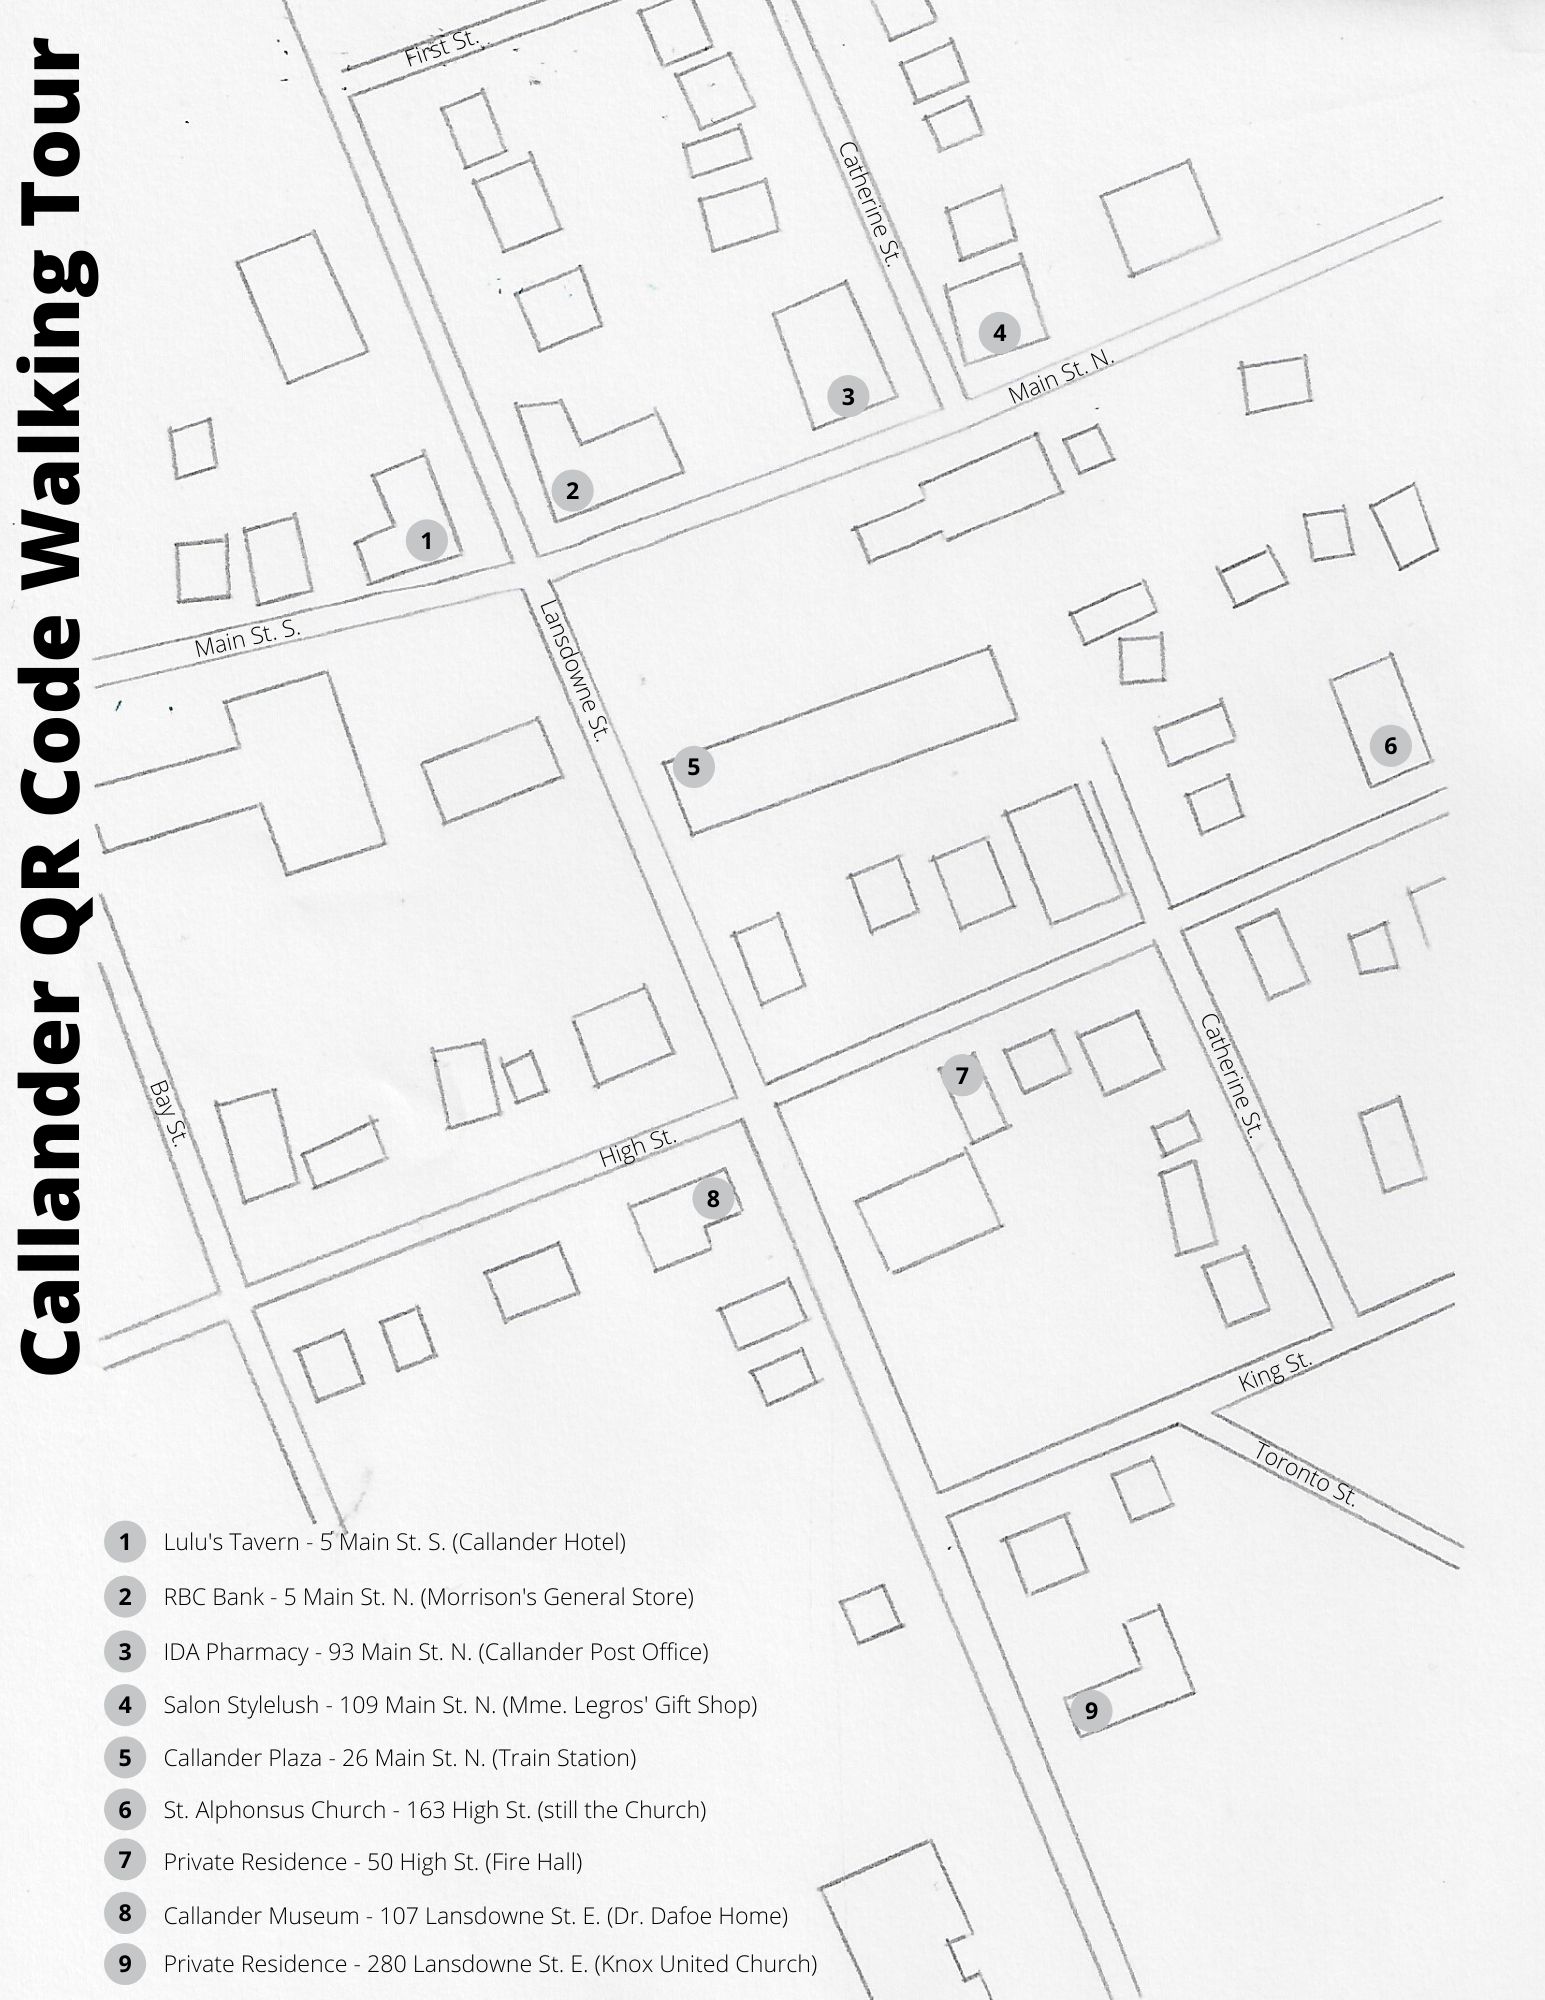 Map of QR Code walking tour